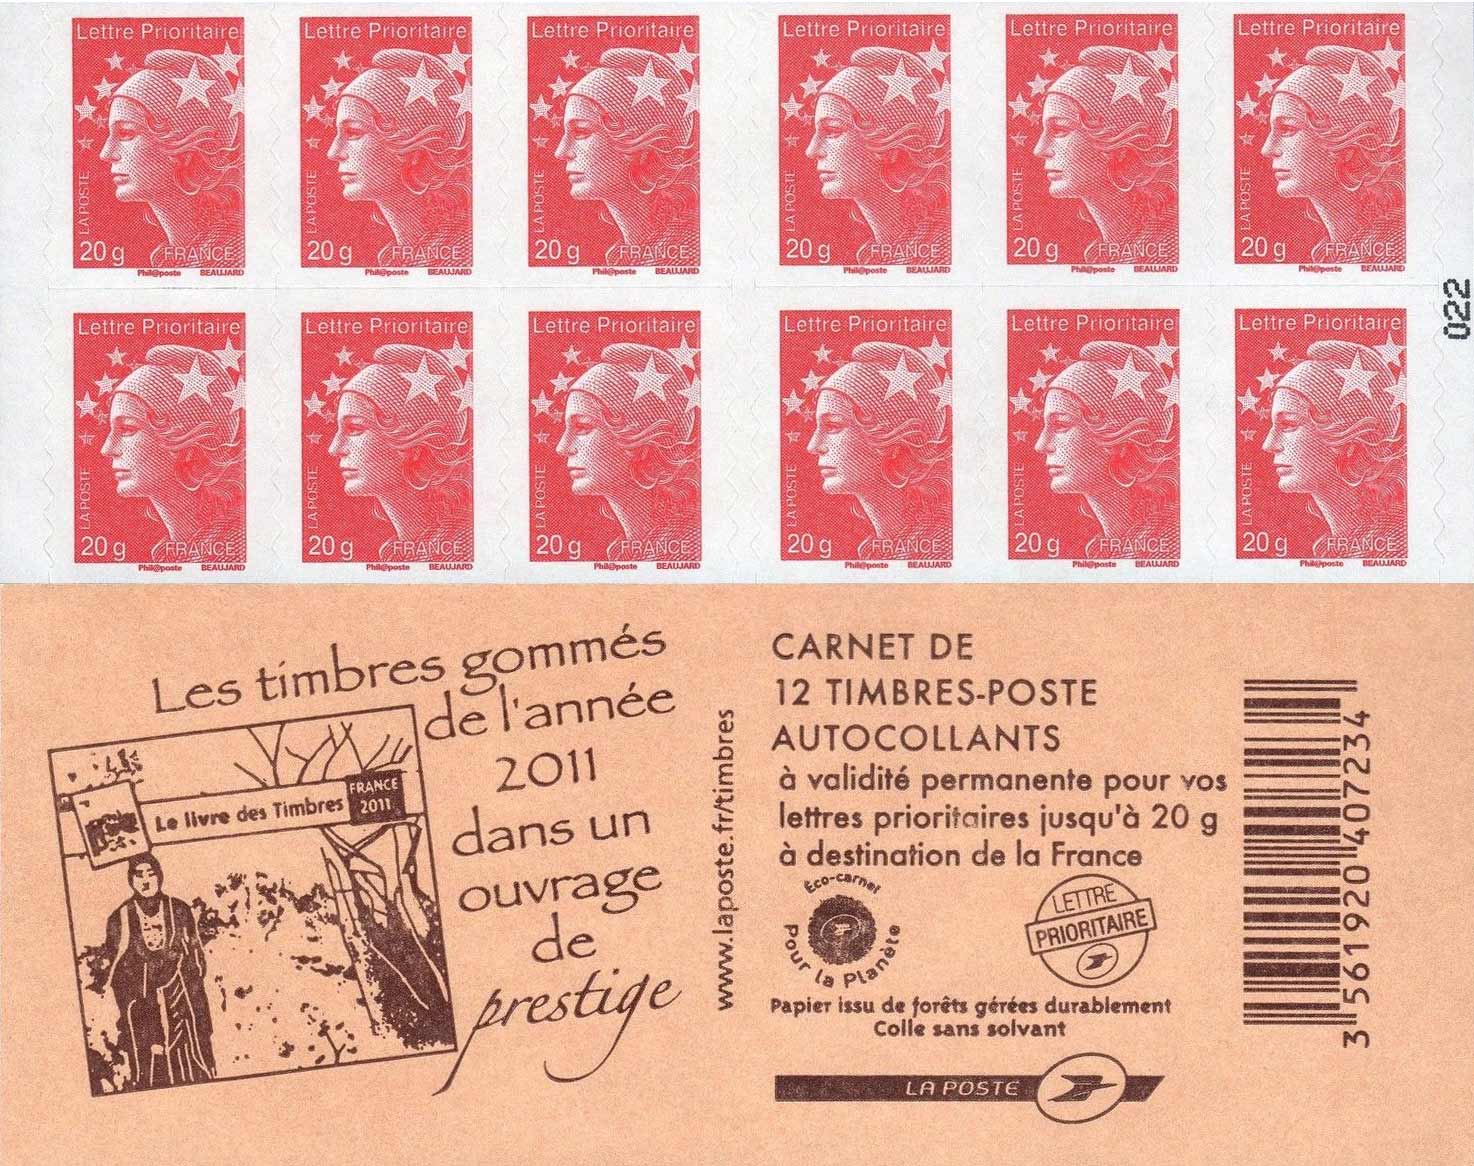 Les timbres gommés de l'année 2011 dans un ouvrage de prestige